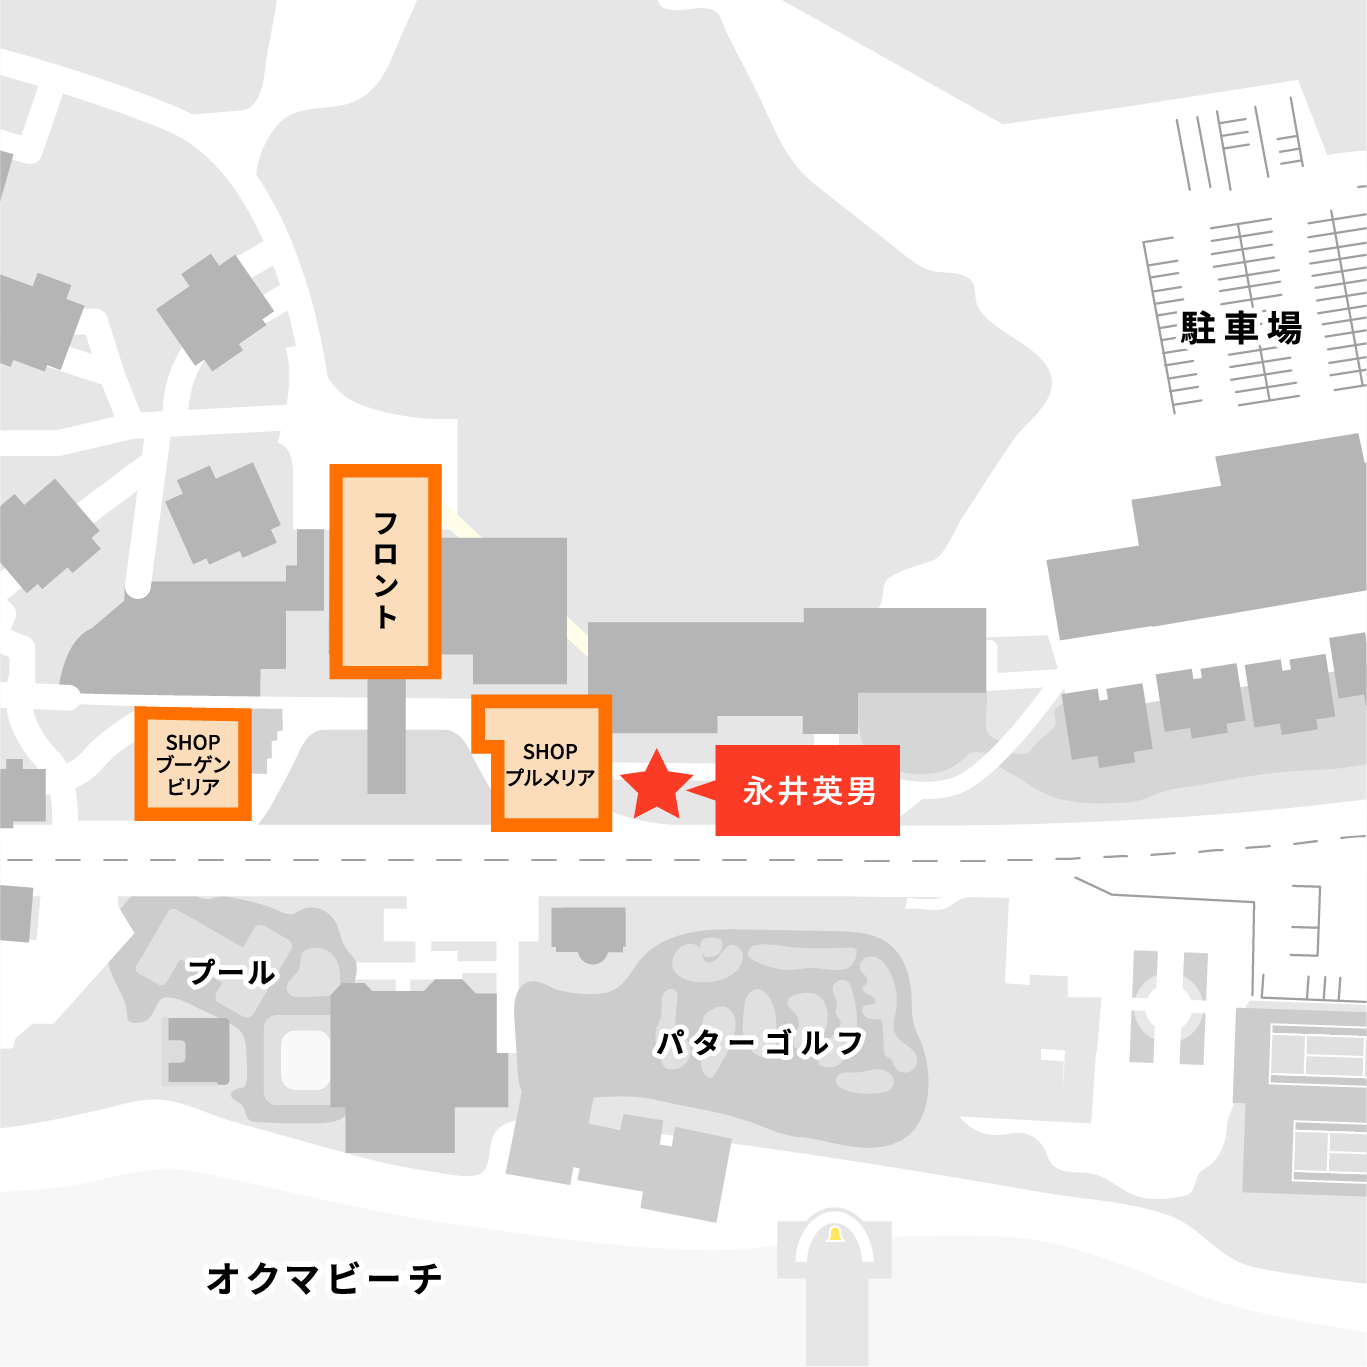 Exhibition Location